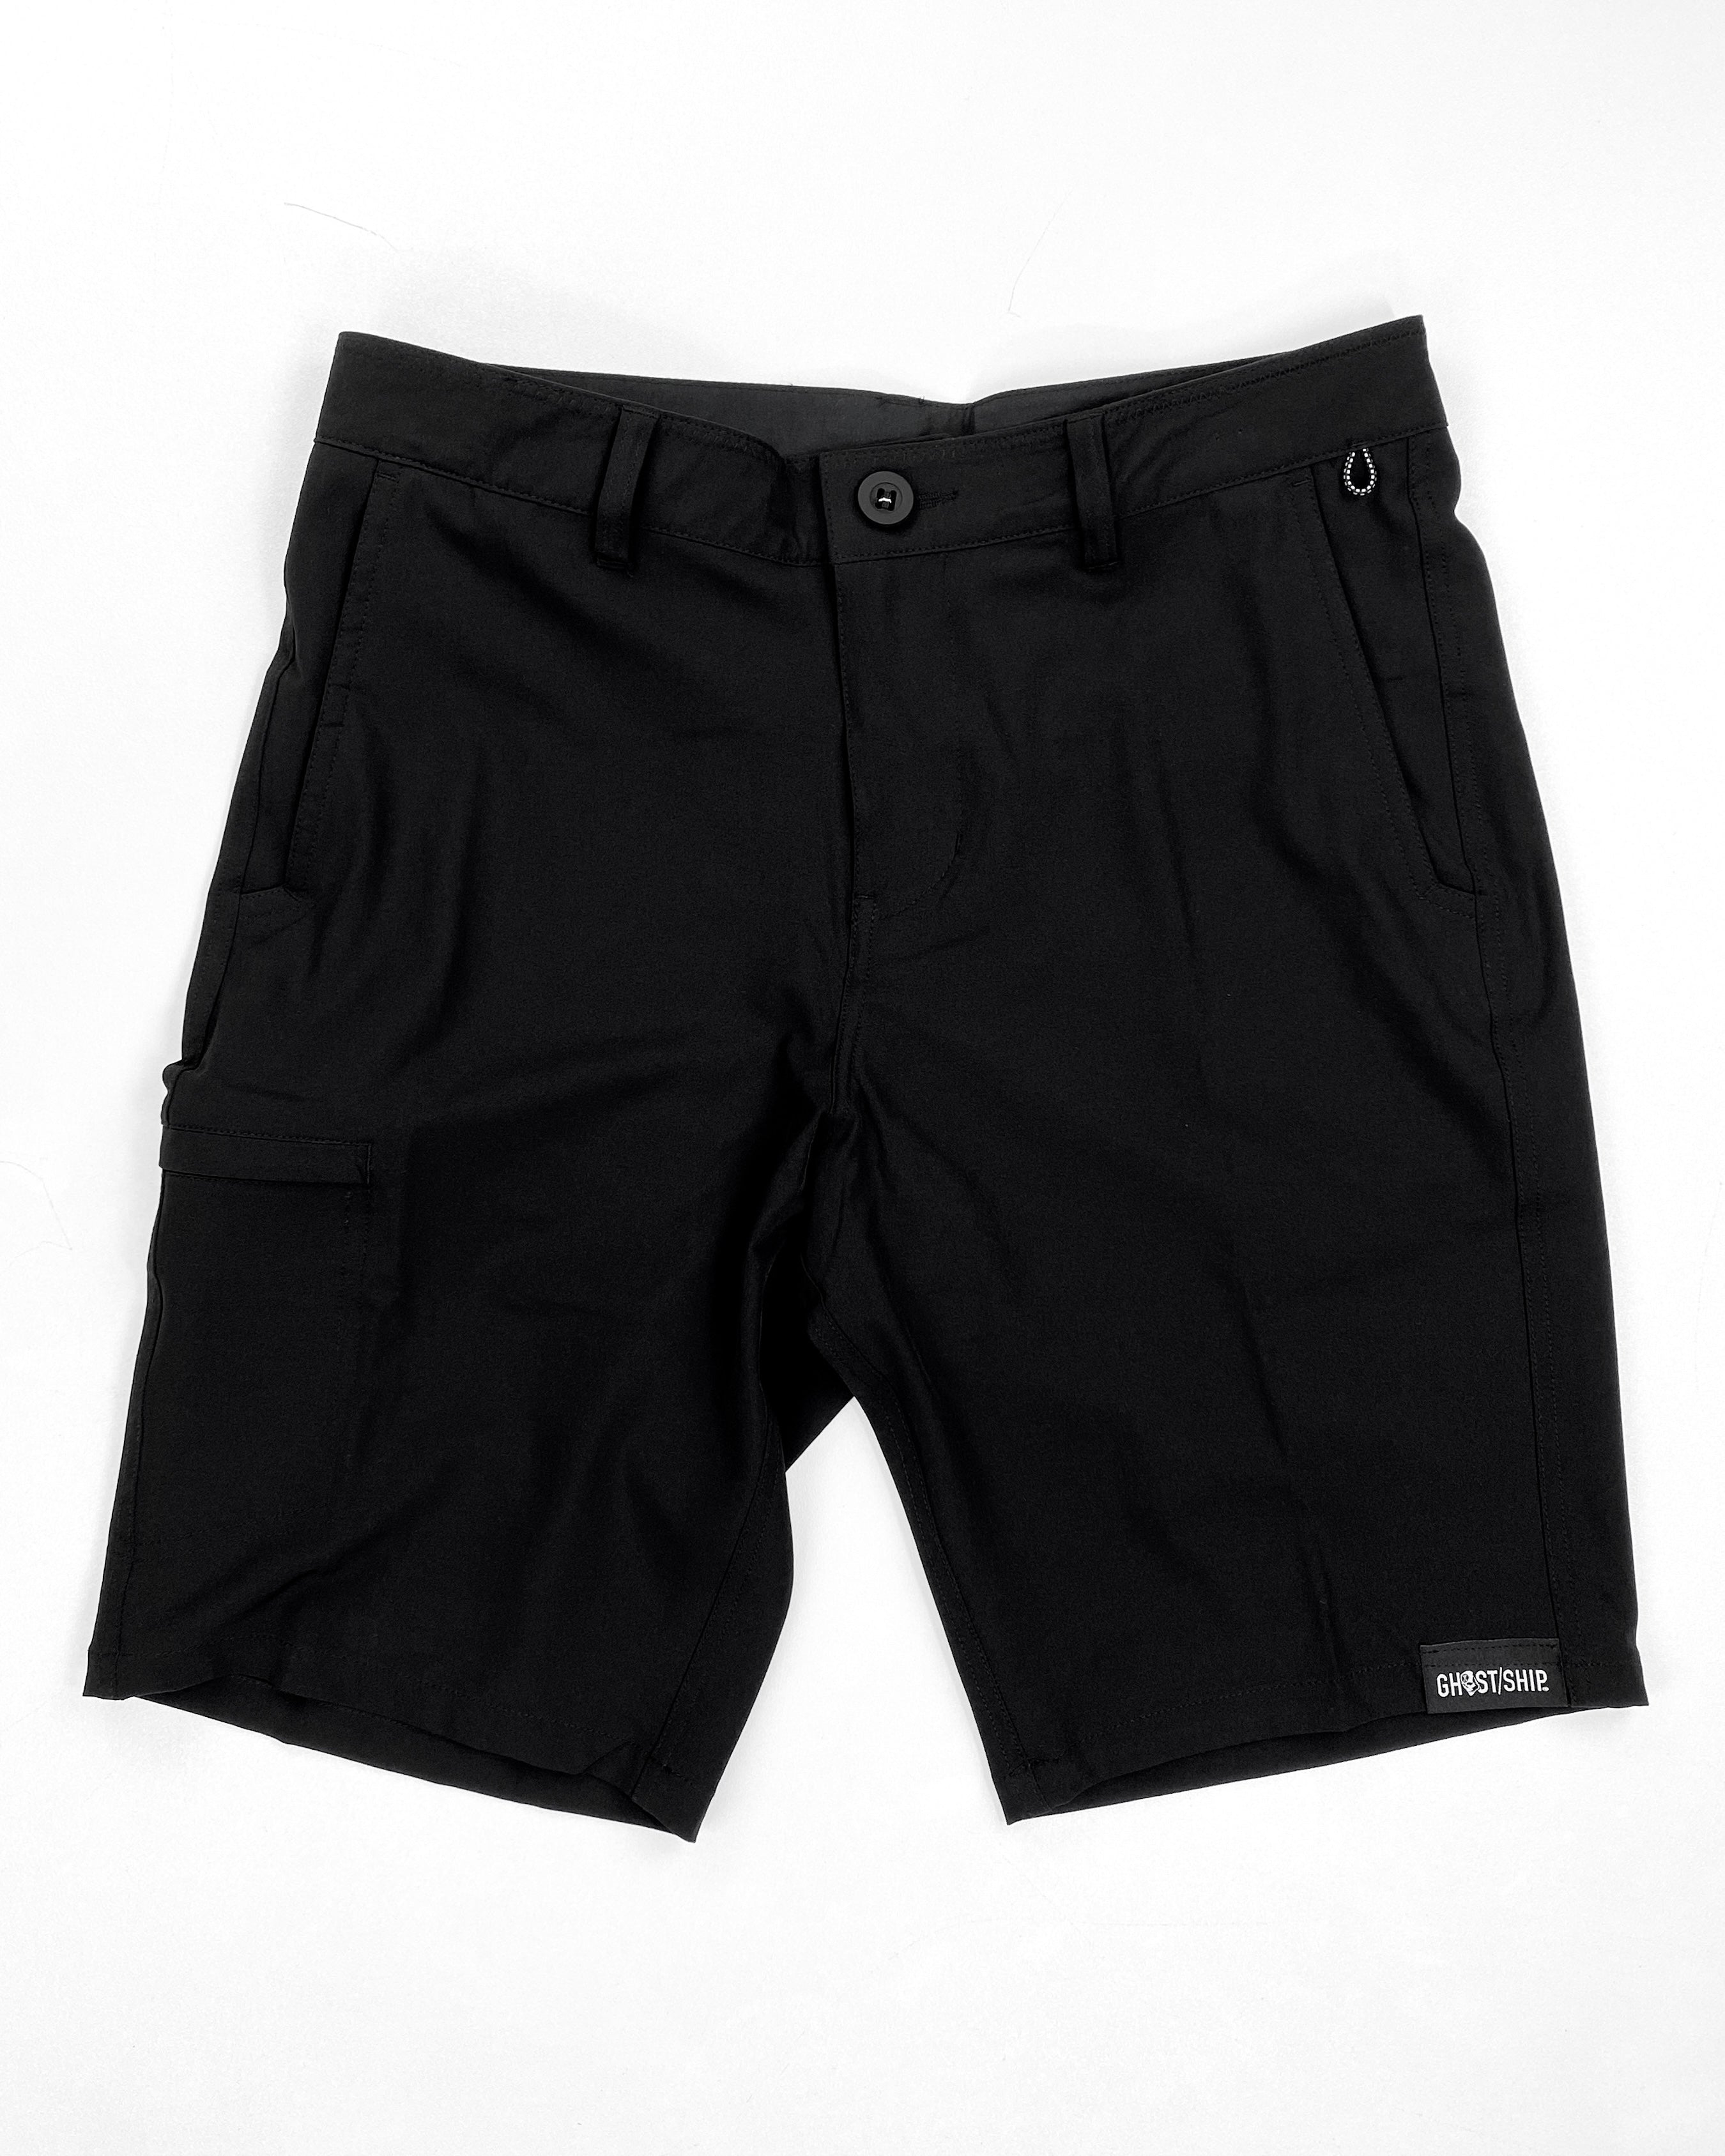 Hybrid Shorts - Black - GHOSTSHIP.Supply